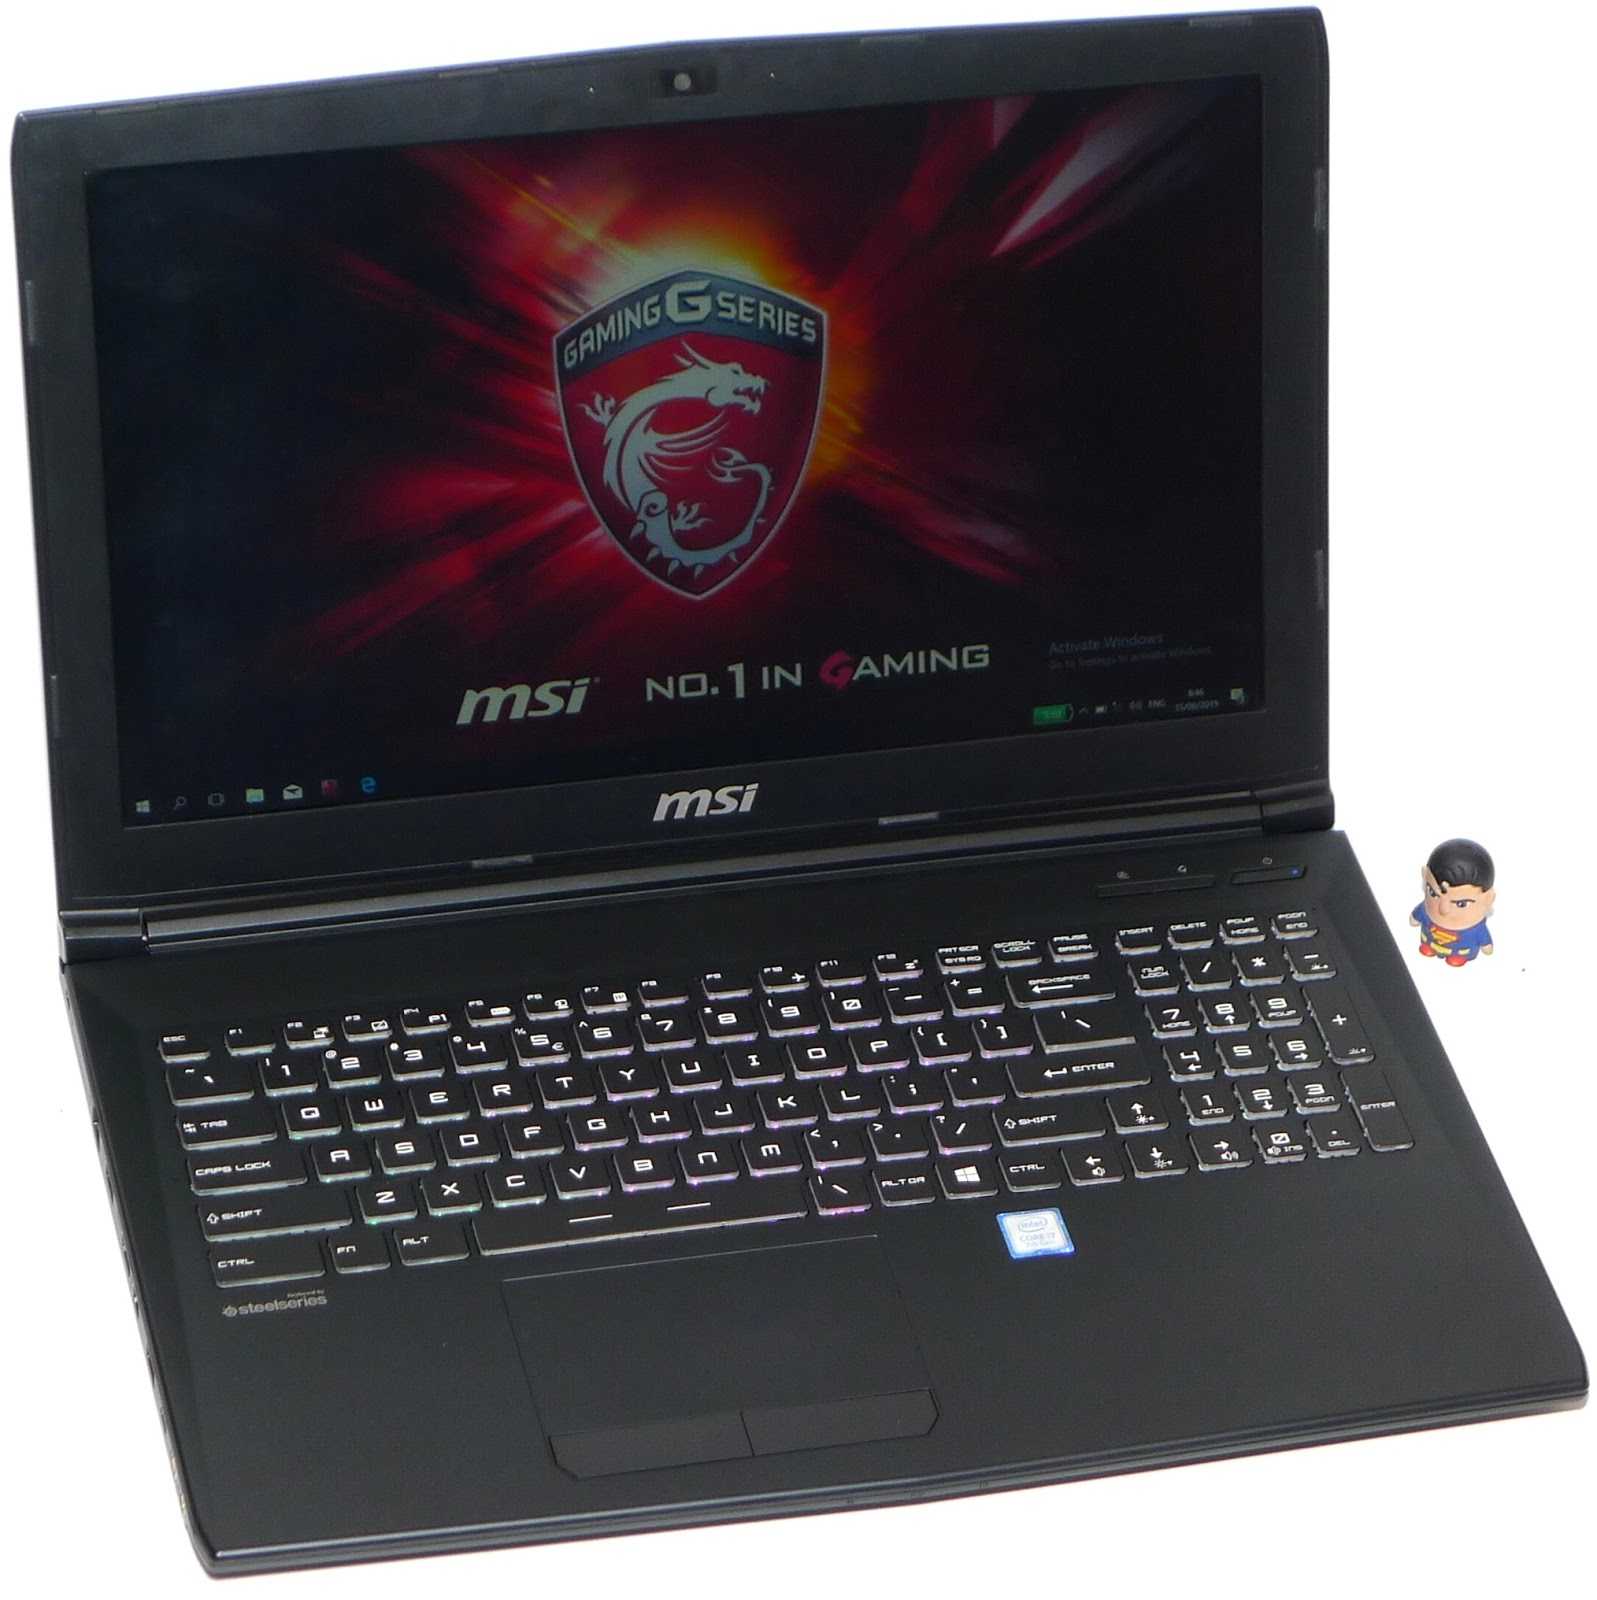 Msi gp70 (gp702od-055xua) ᐈ потрібно купити ноутбук?